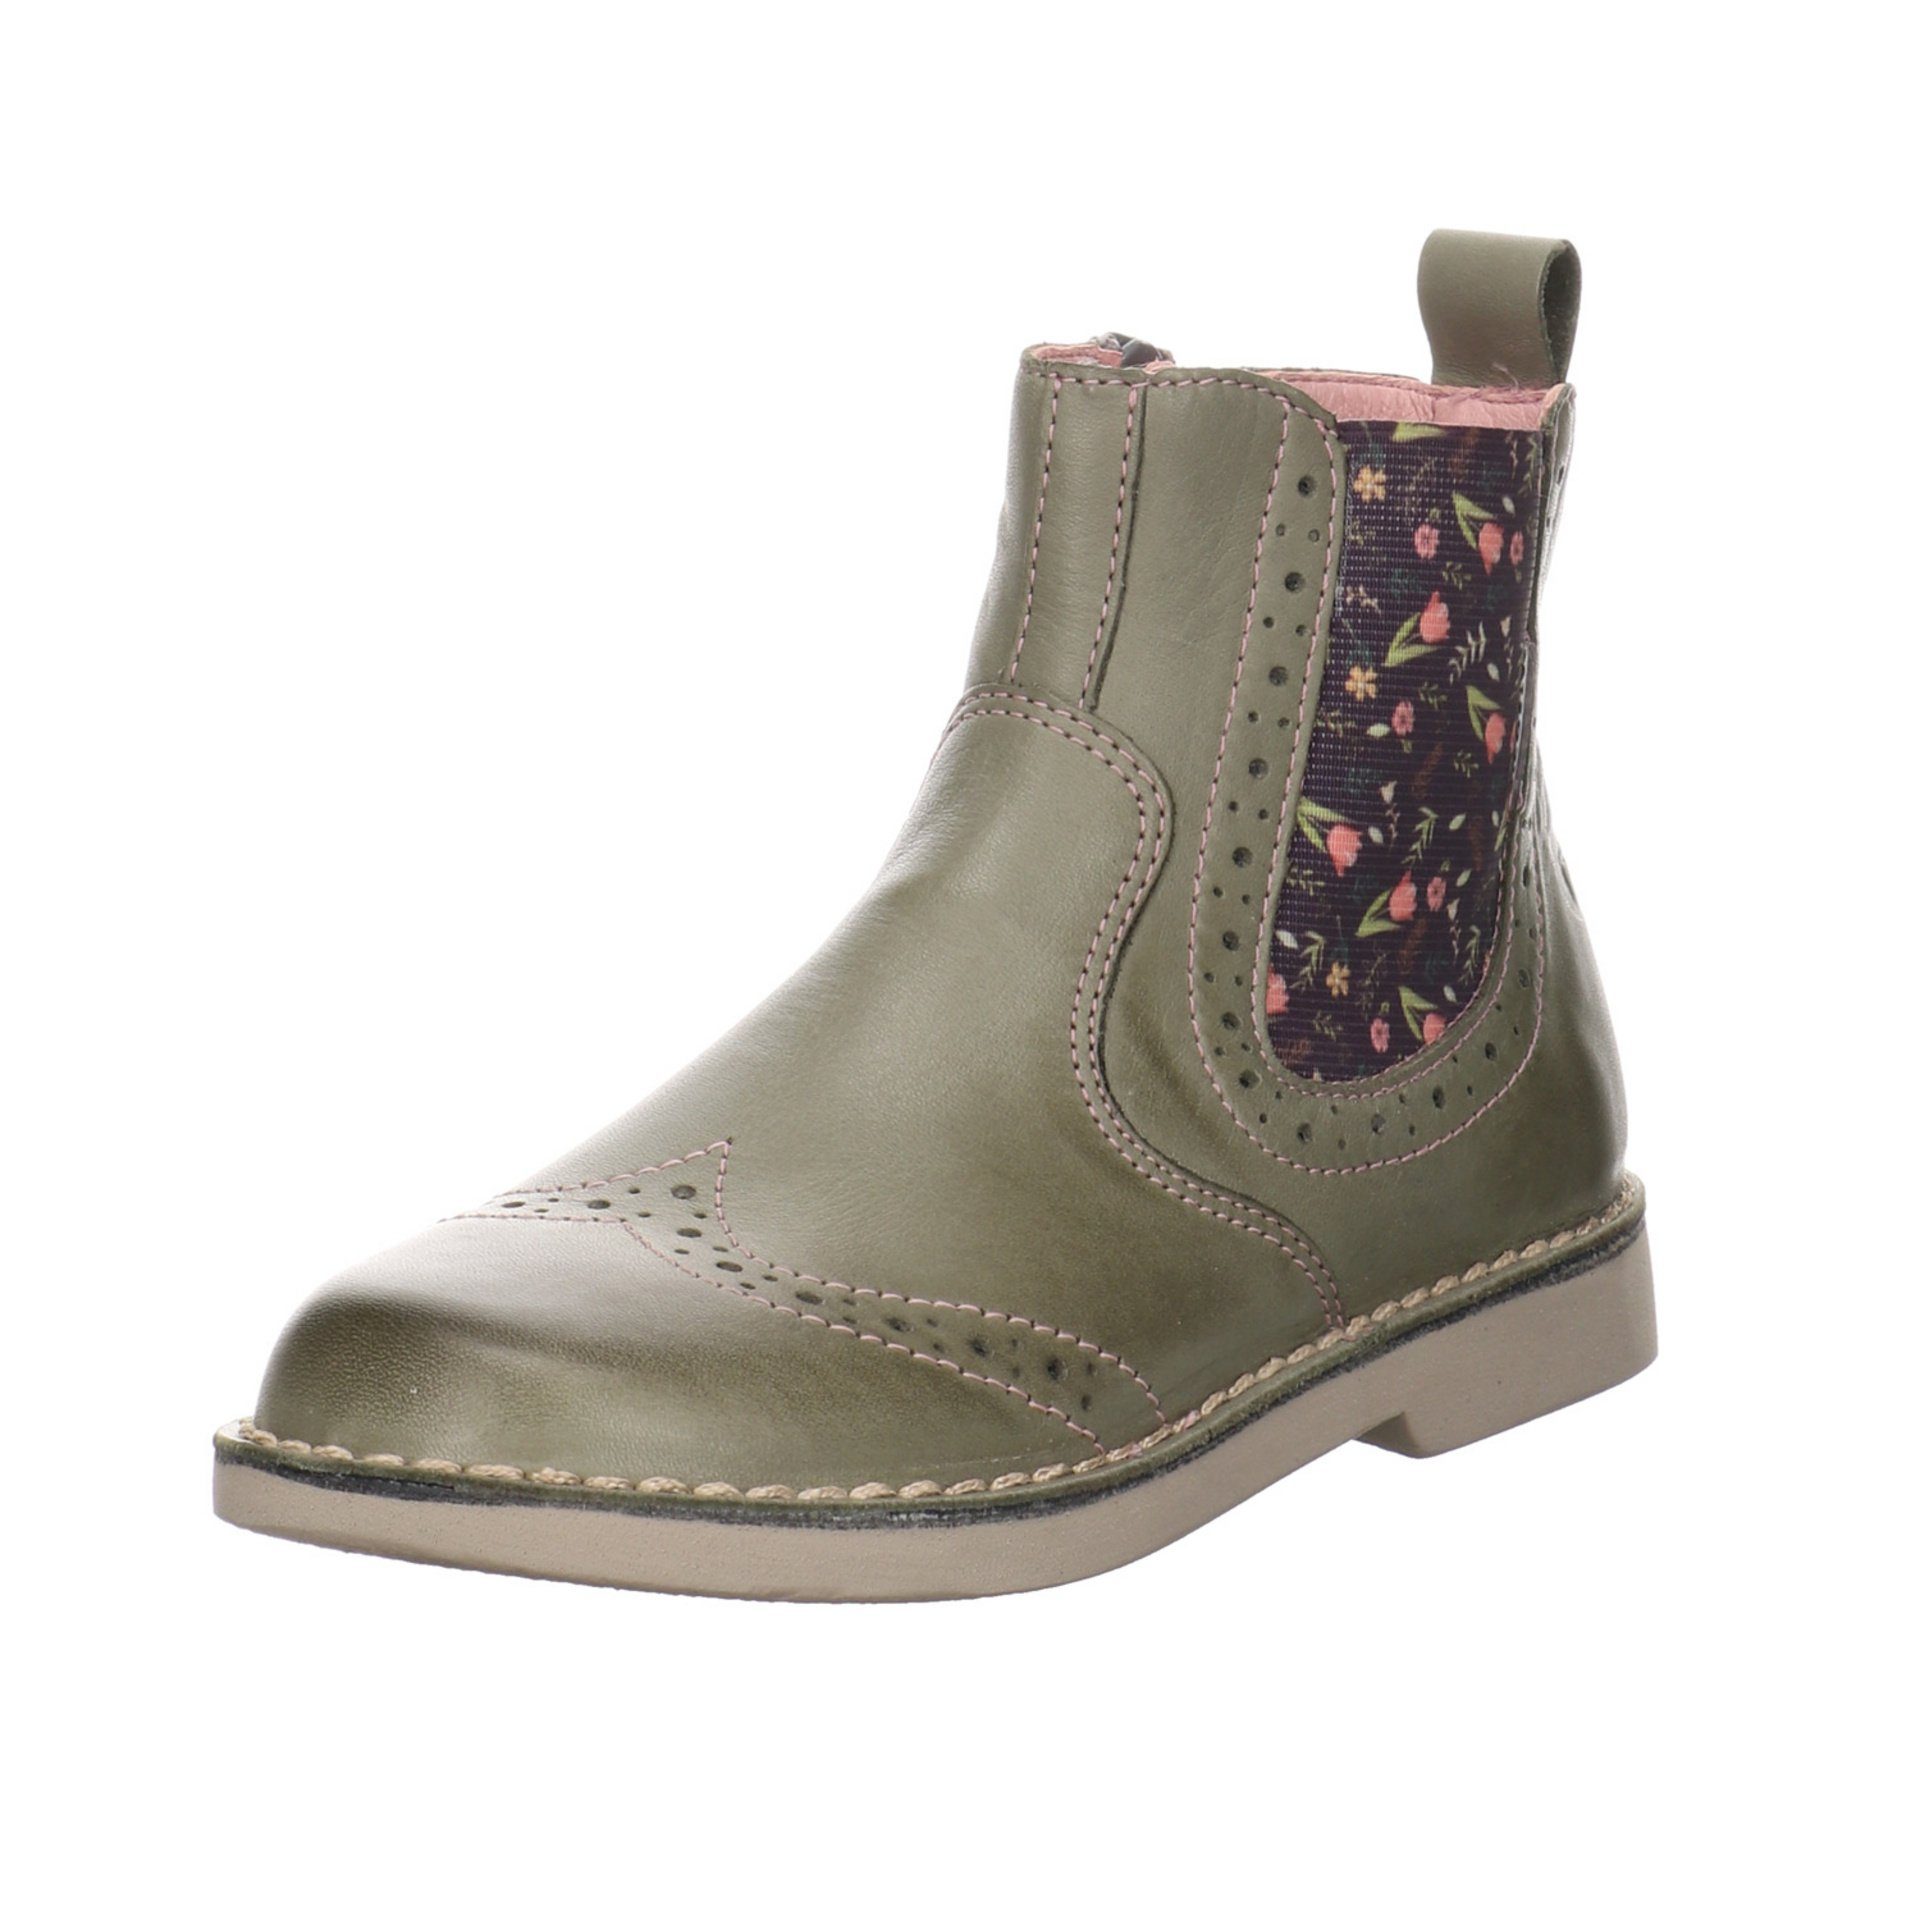 Ricosta Mädchen Stiefel Dallas Boots Chelsea Glattleder Stiefelette (540) eukalyptus/Blume Schuhe